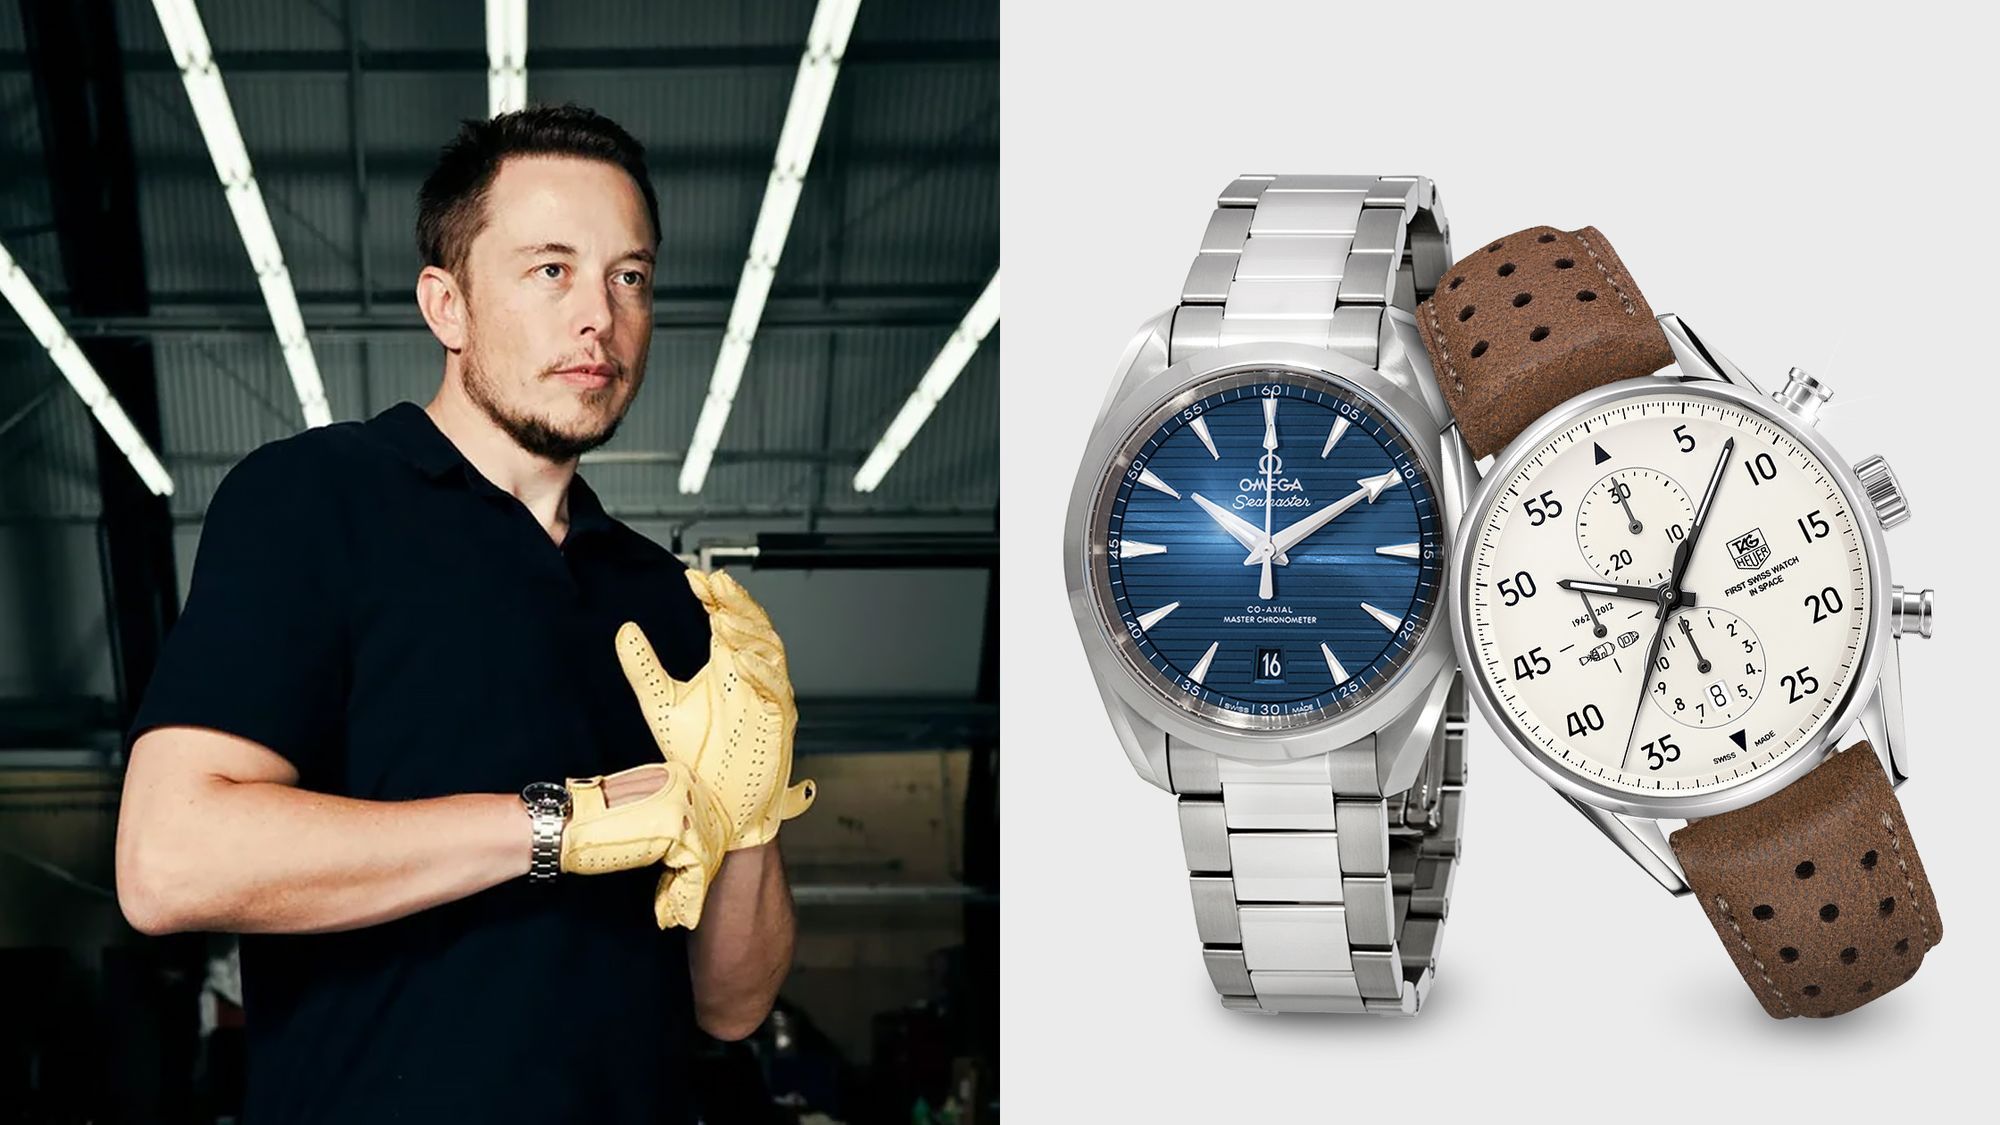 Khám phá bộ sưu tập đồng hồ của tỷ phú công nghệ Elon Musk